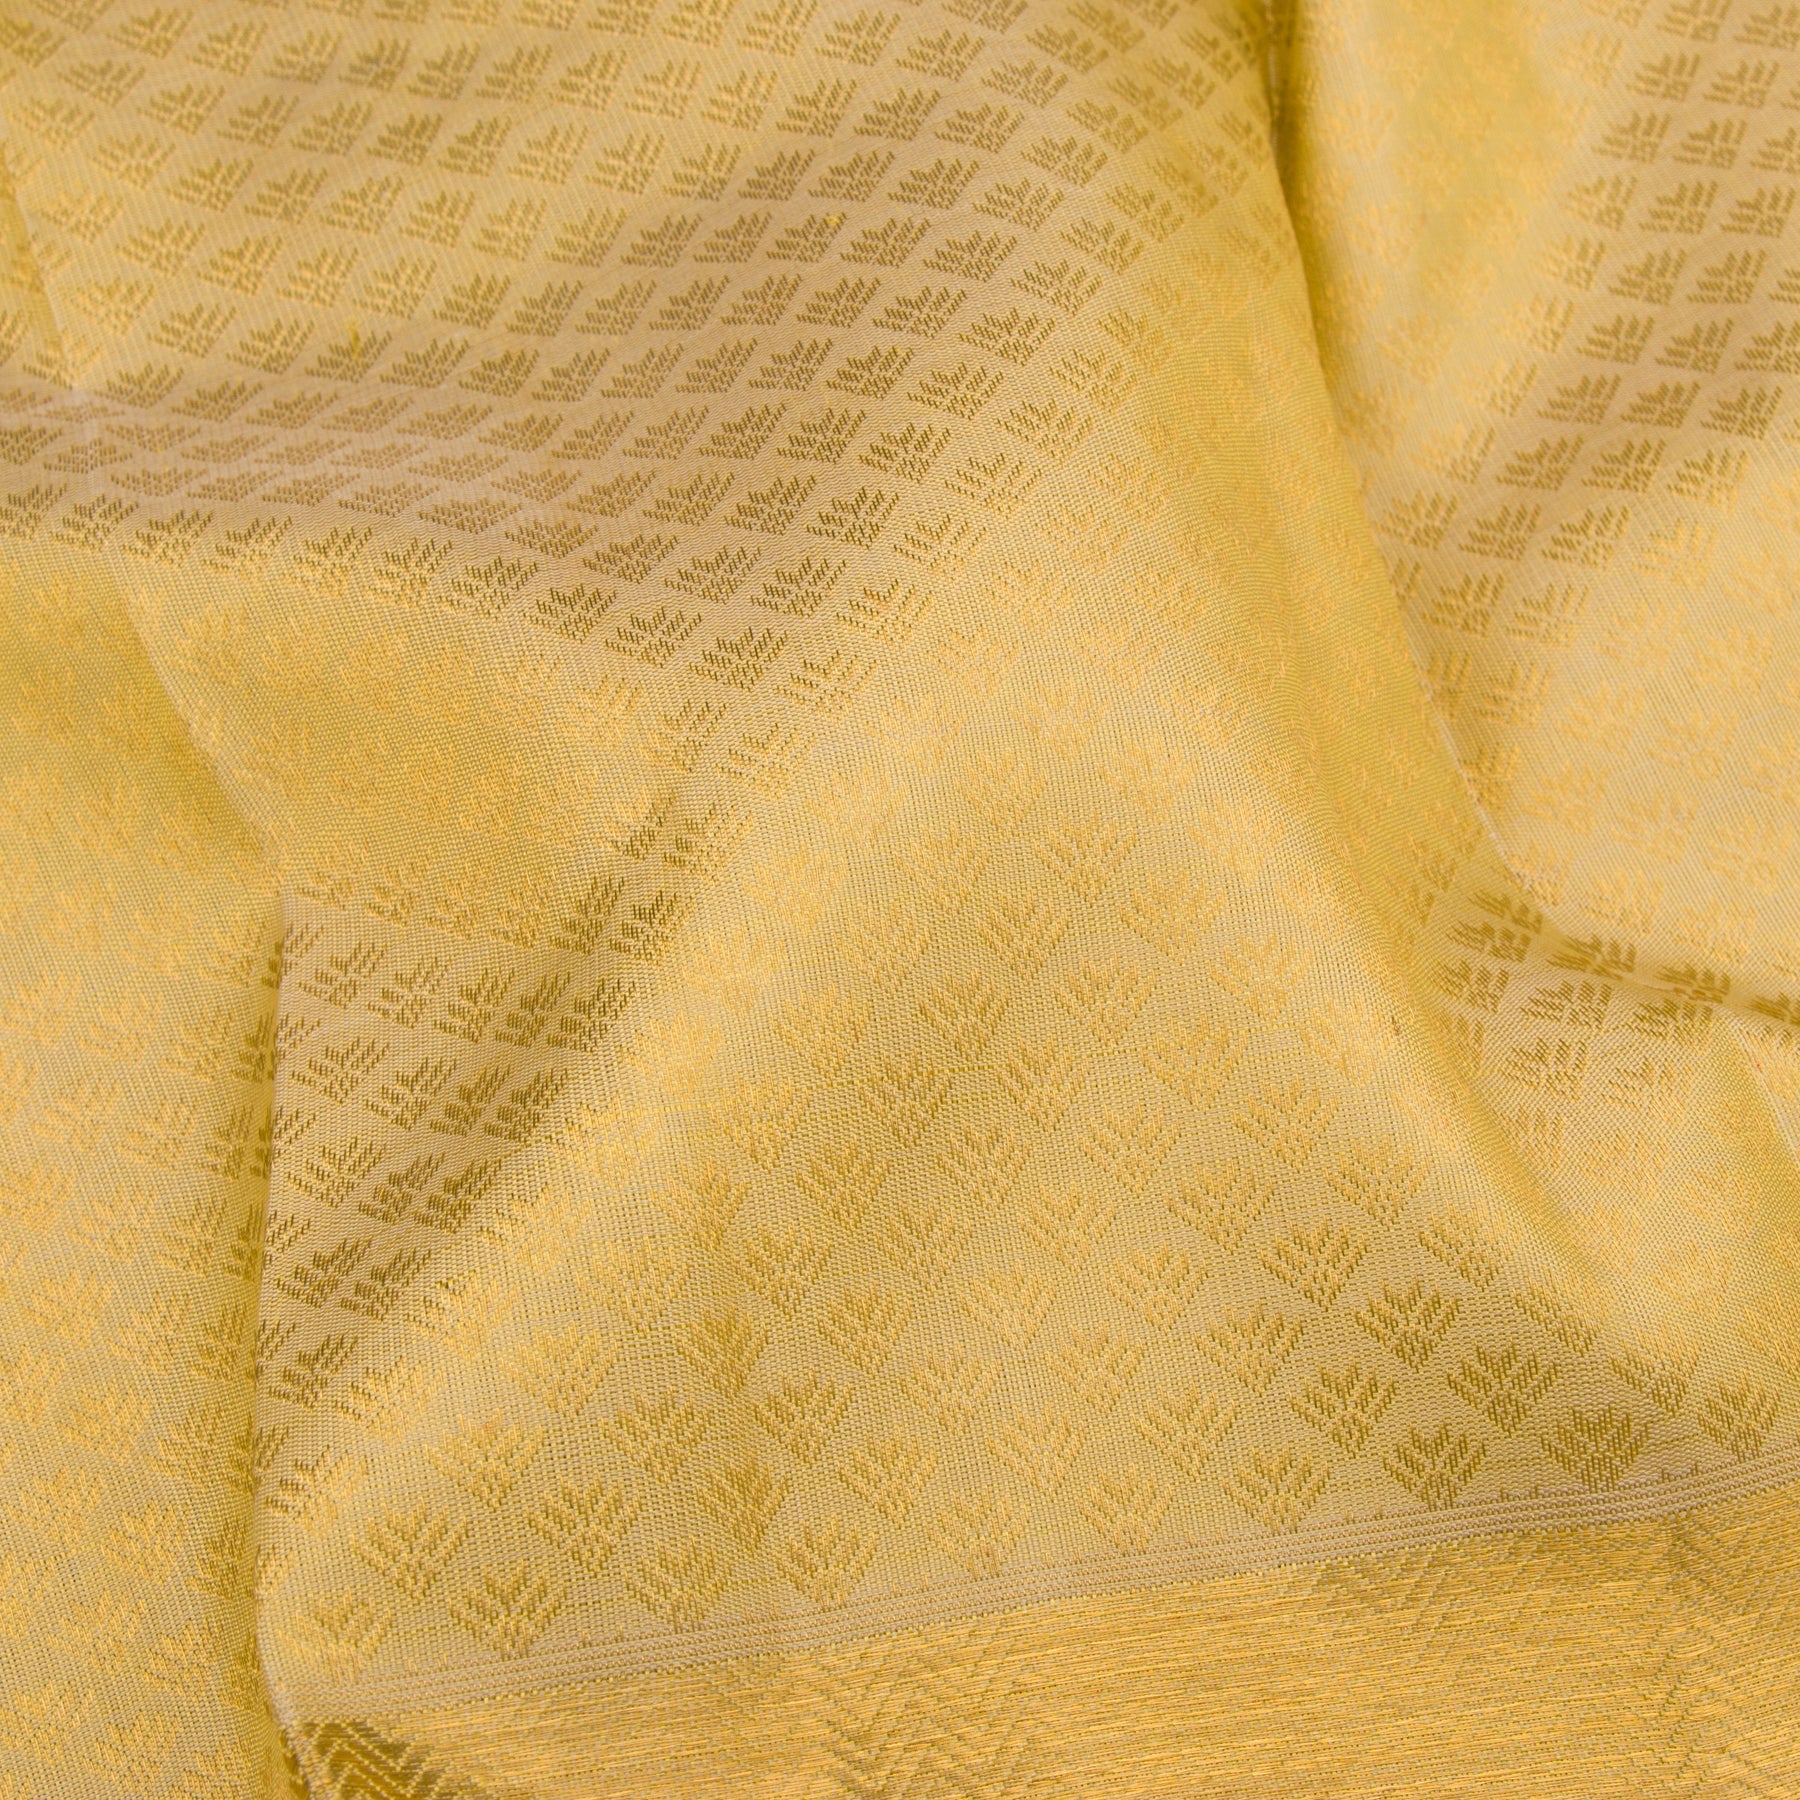 Kanakavalli Kanjivaram Silk Sari 22-599-HS001-05229 - Fabric View